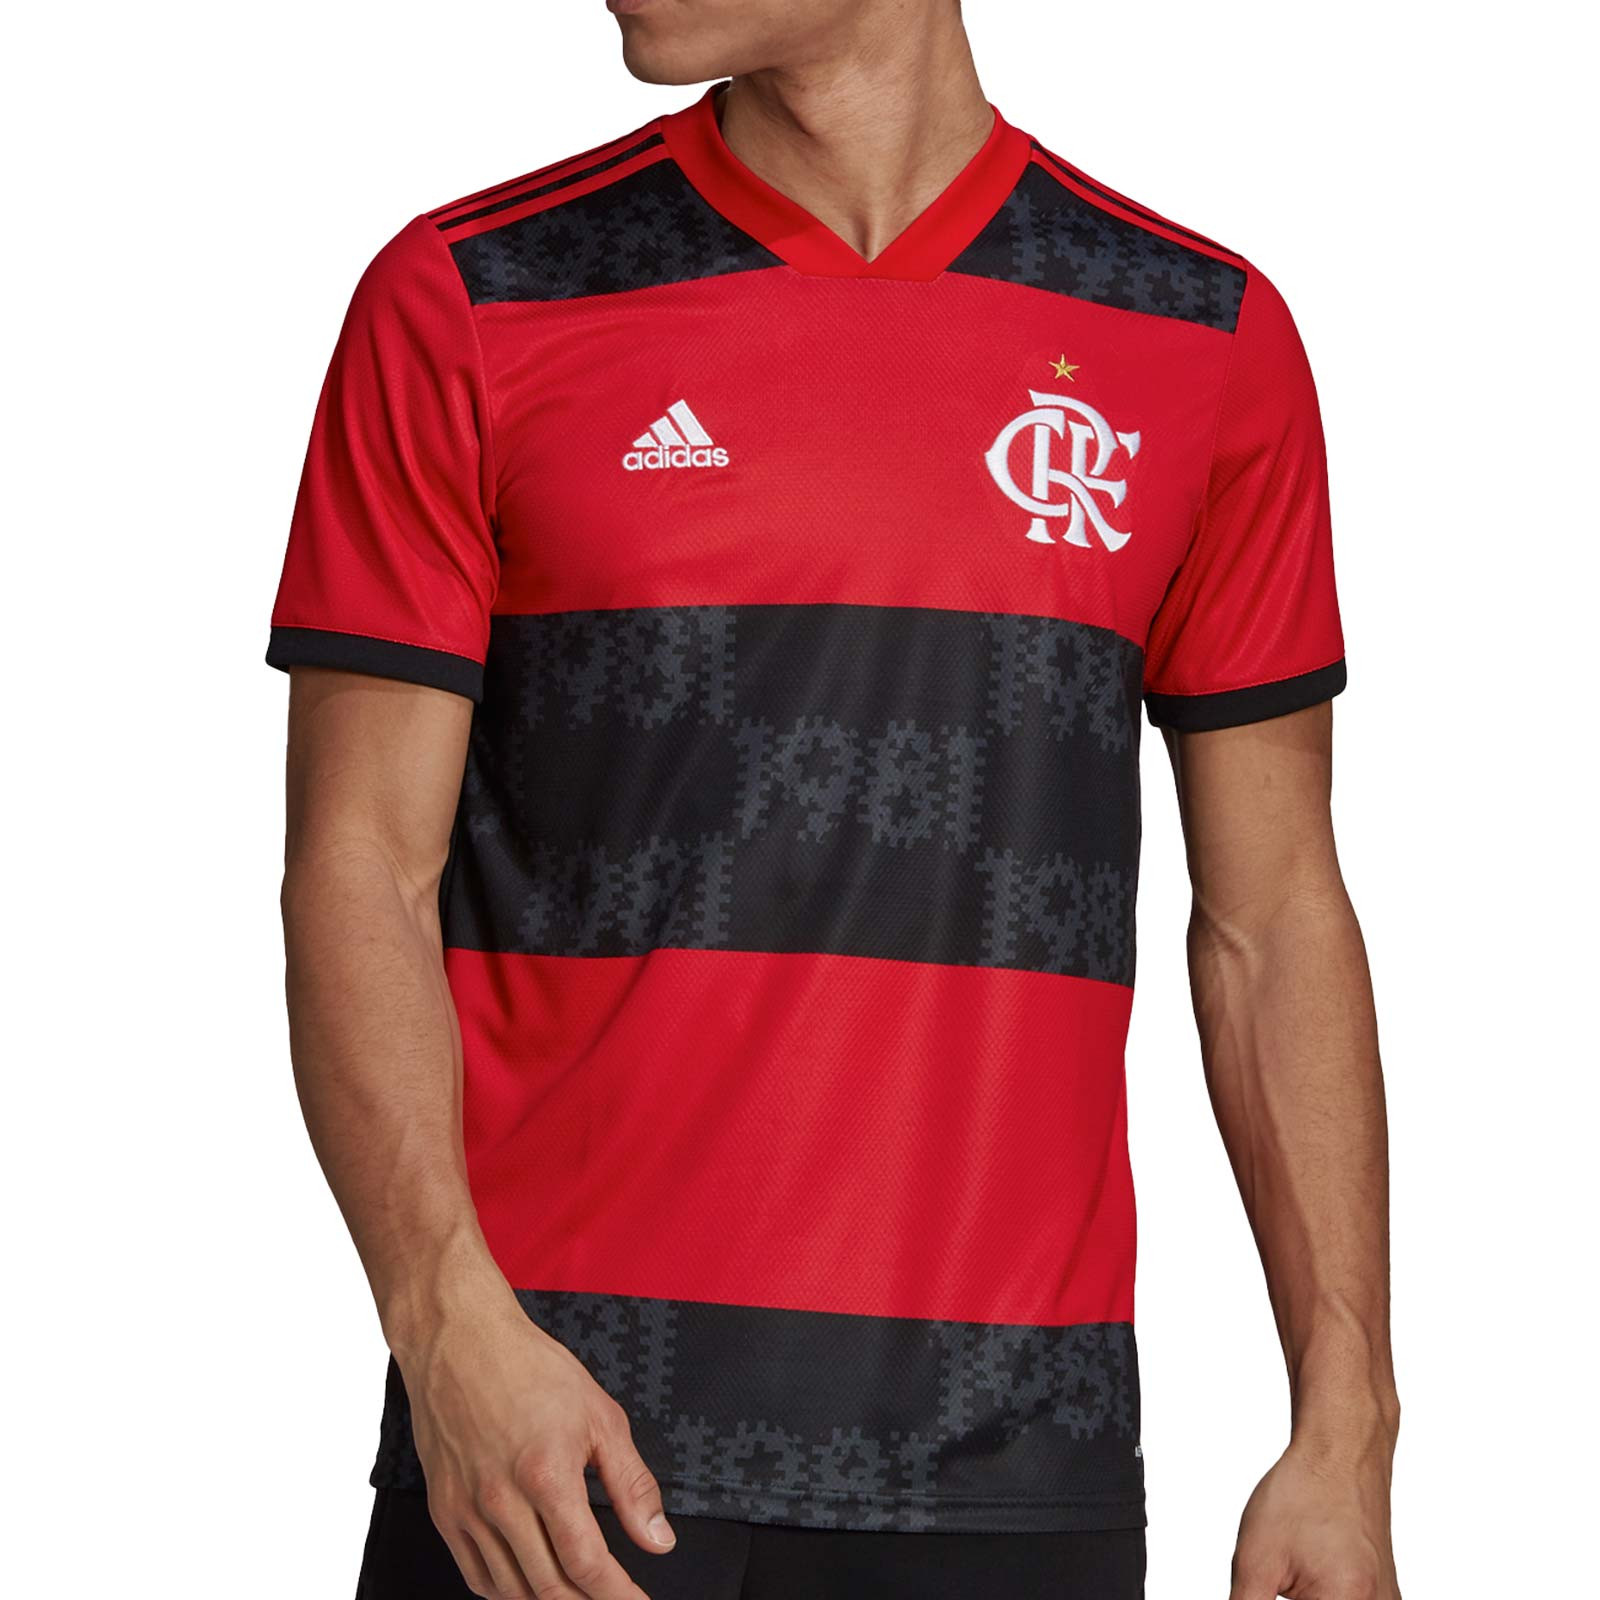 Moderador Evaluable Estragos Camiseta adidas Flamengo 2021 2022 roja negra | futbolmania